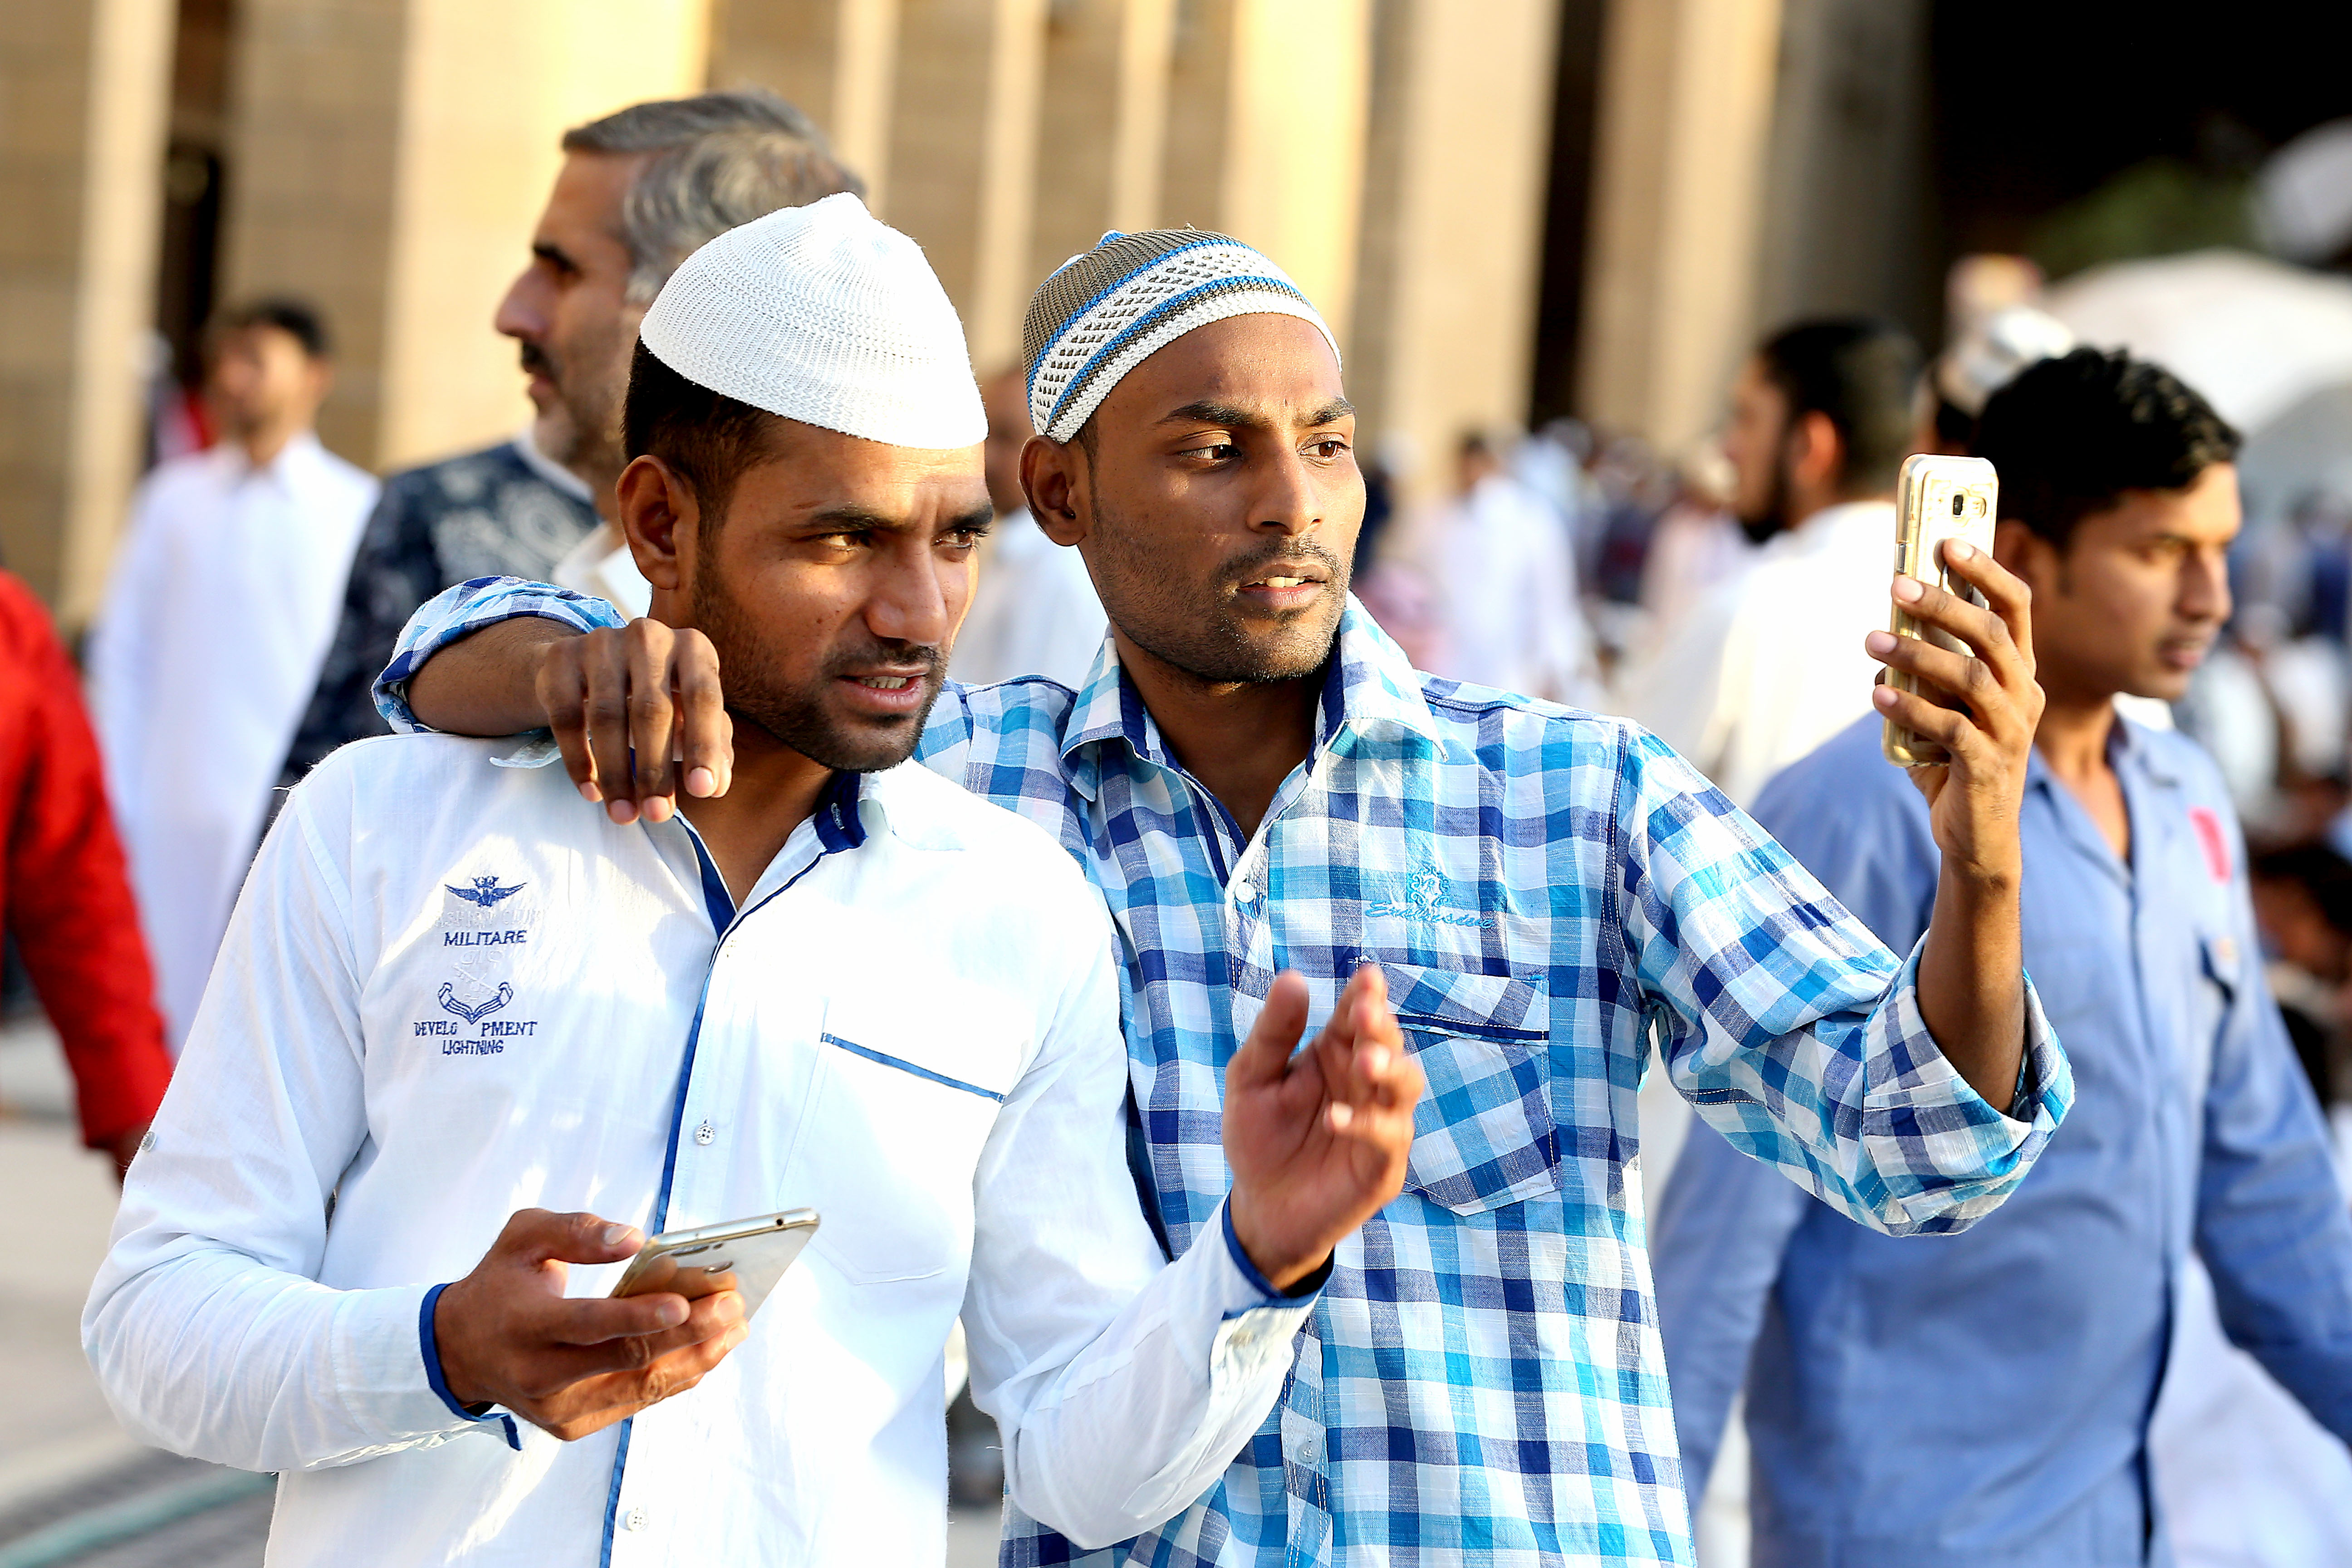 Ali bodo v muslimanskih državah dovolili izvajanje krščanskih tradicij ?Foto: epa